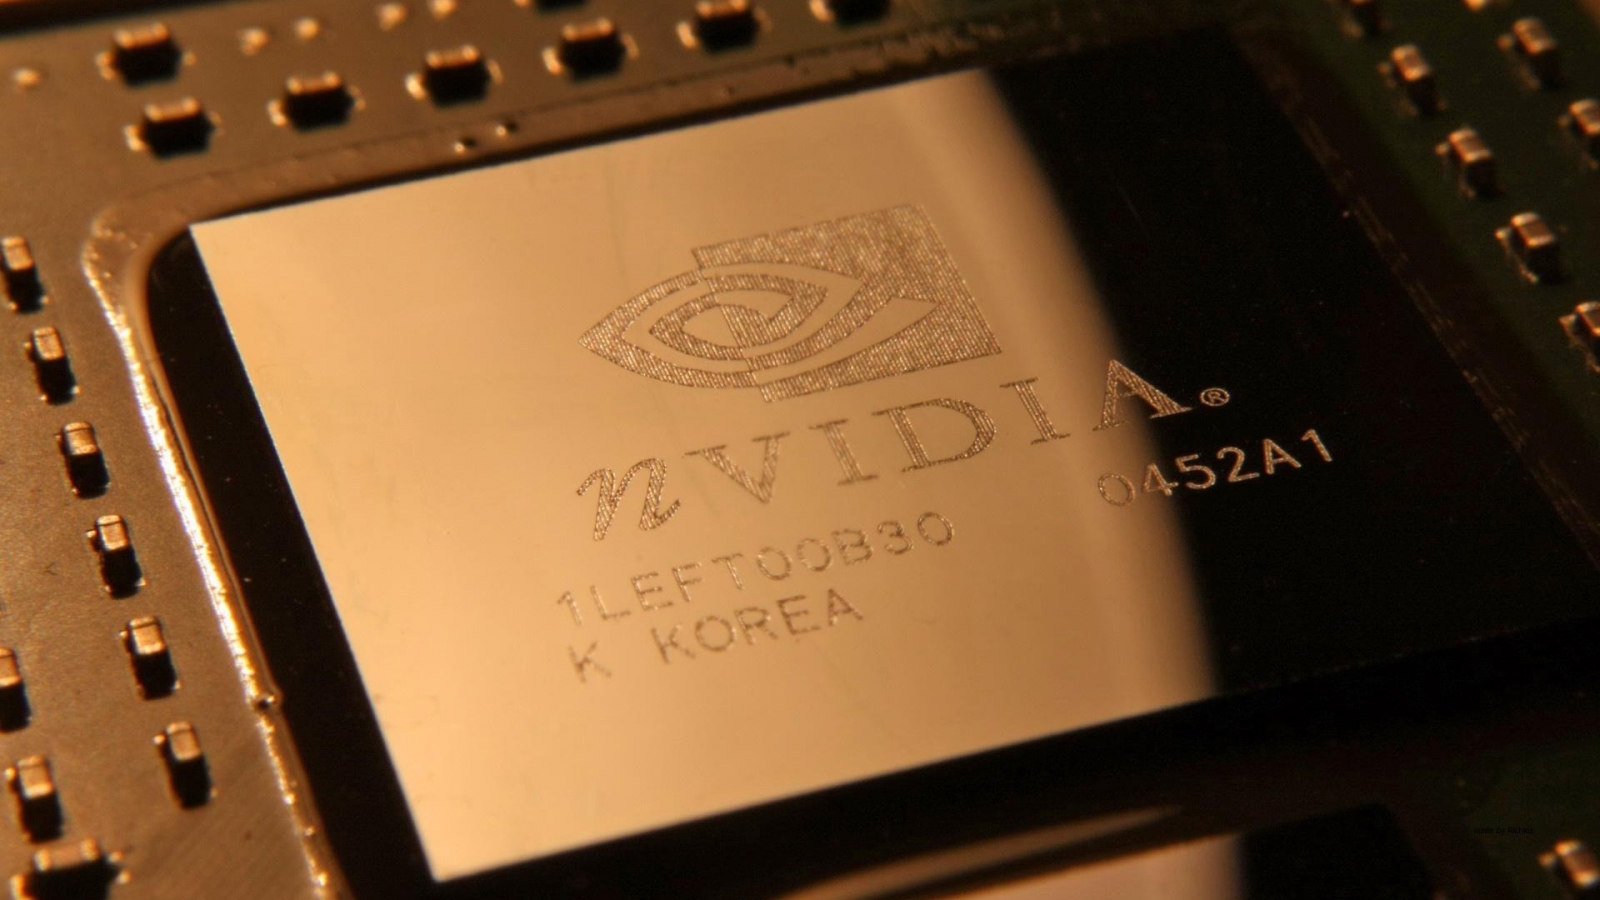 nVIdia Chipset for 1600 x 900 HDTV resolution